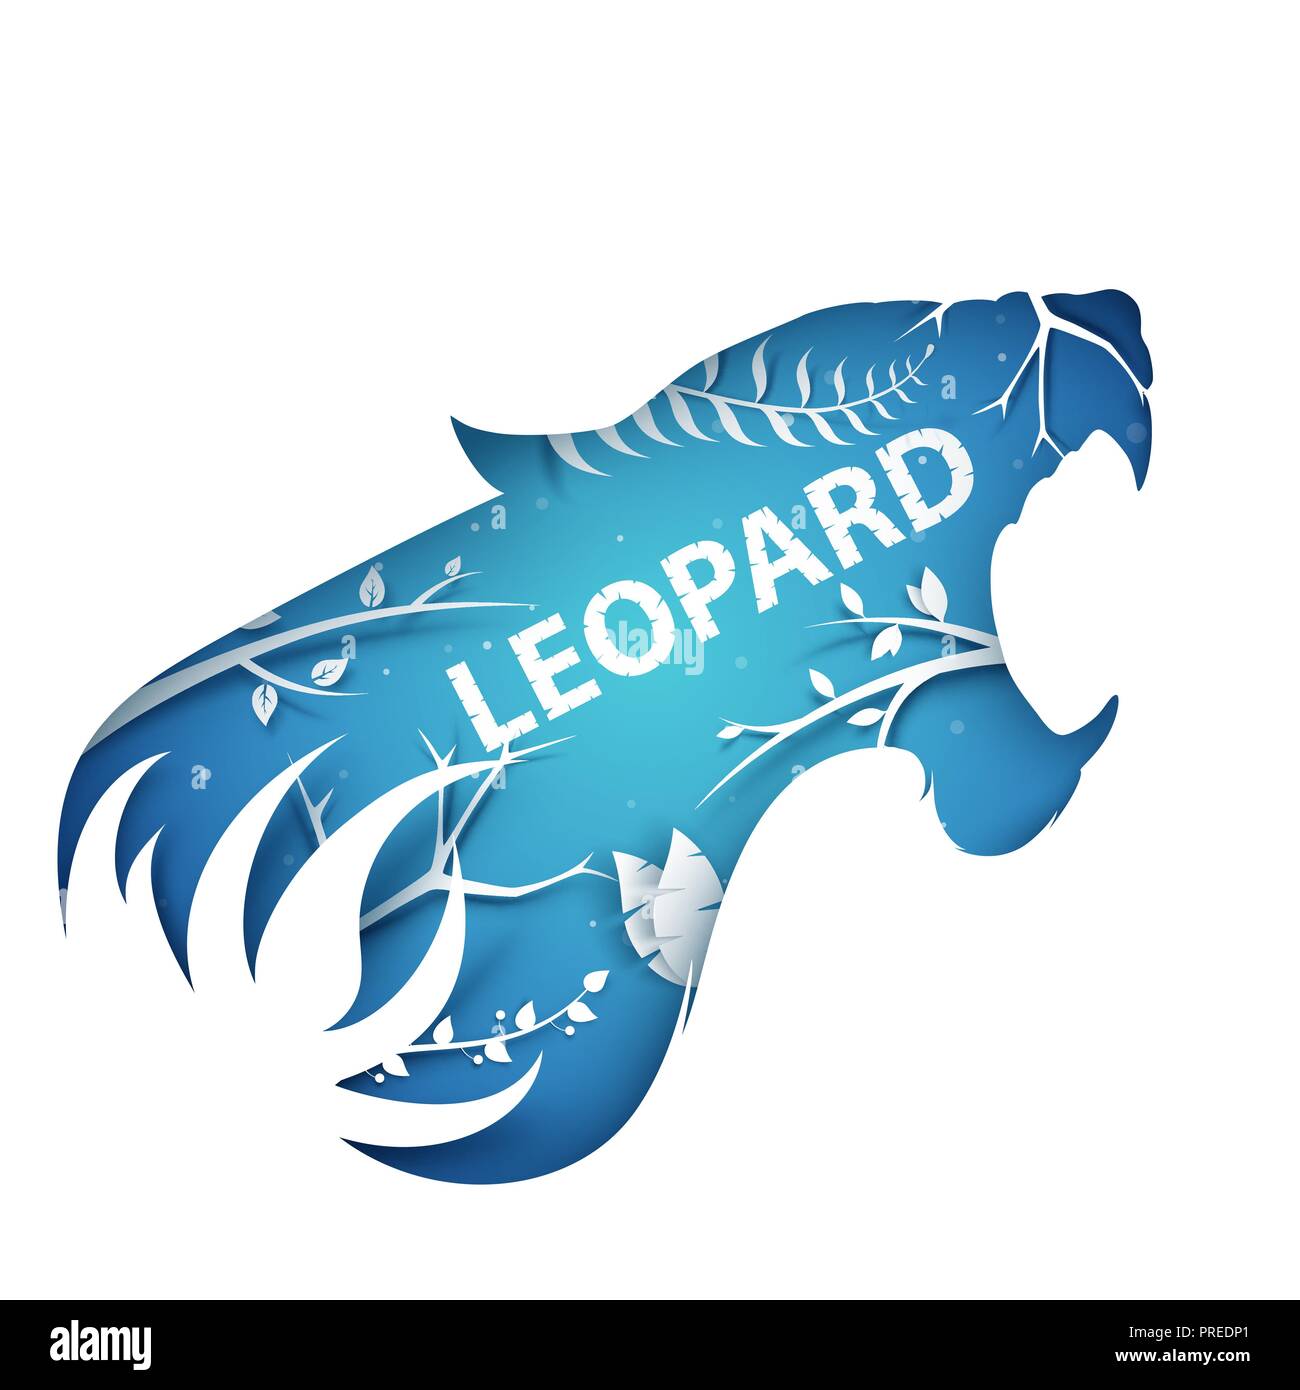 Cartoon paper branch. Leopard illustration. Stock Vector